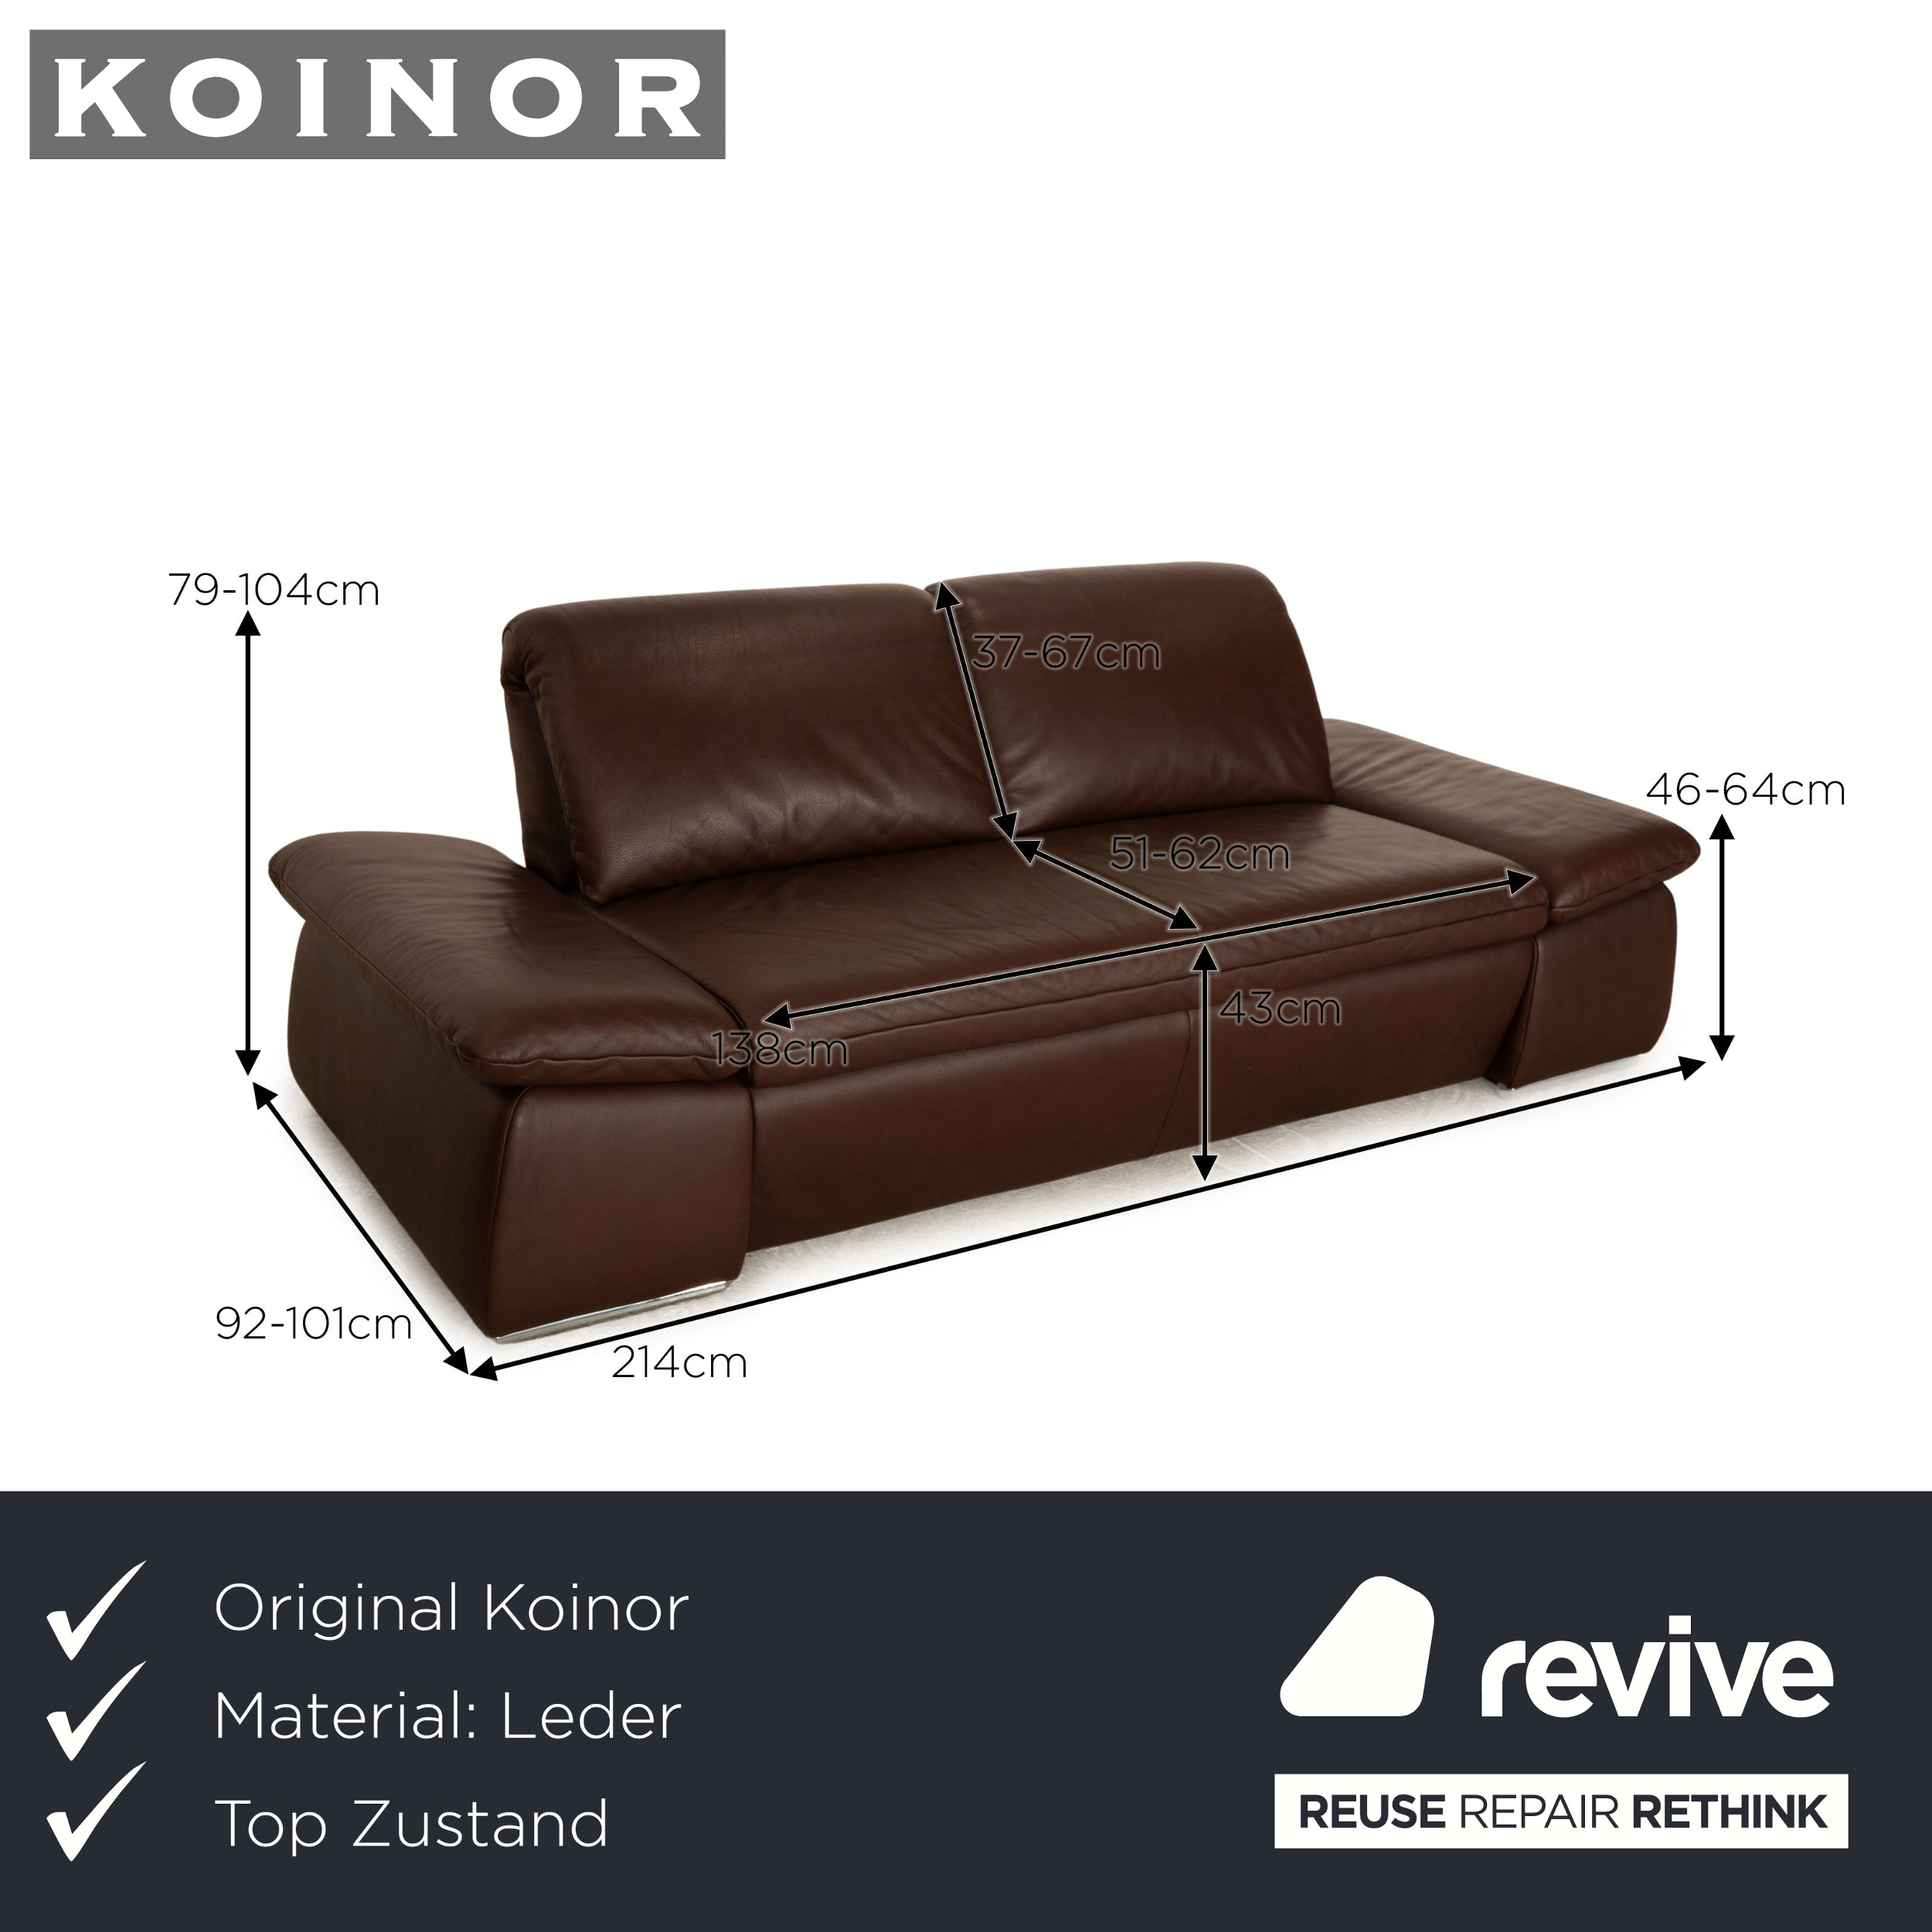 Koinor Evento Leder Zweisitzer Braun manuelle Funktion Sofa Couch